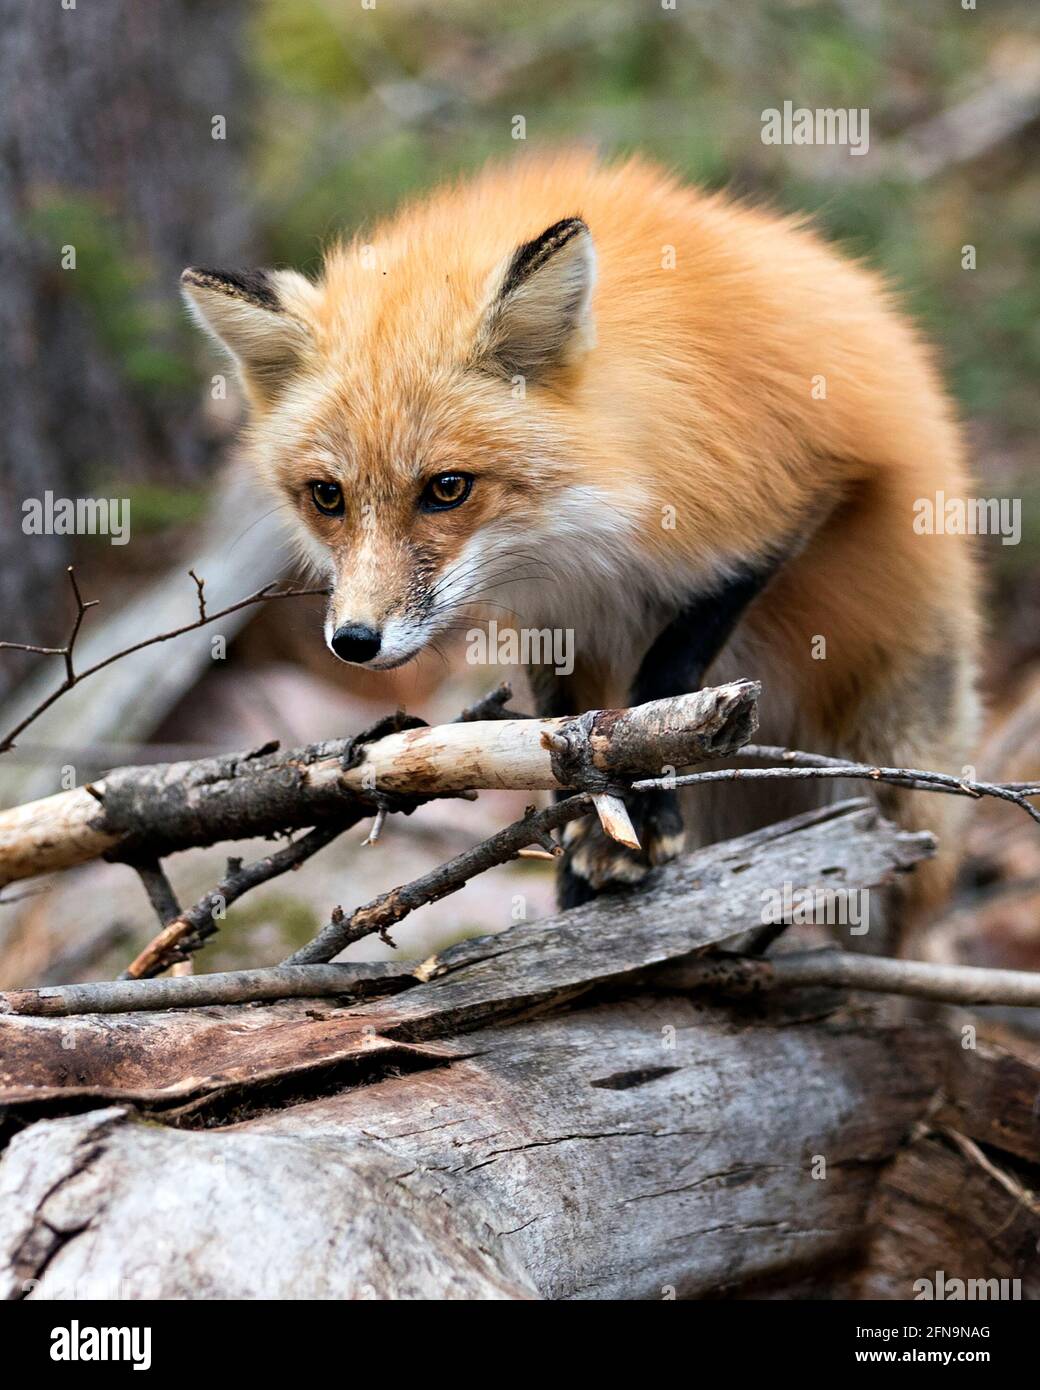 Vista del profilo in primo piano della testa di Red Fox con sfondo sfocato nel suo ambiente e habitat. Immagine. Verticale. Foto. Immagine FOX. Foto Stock